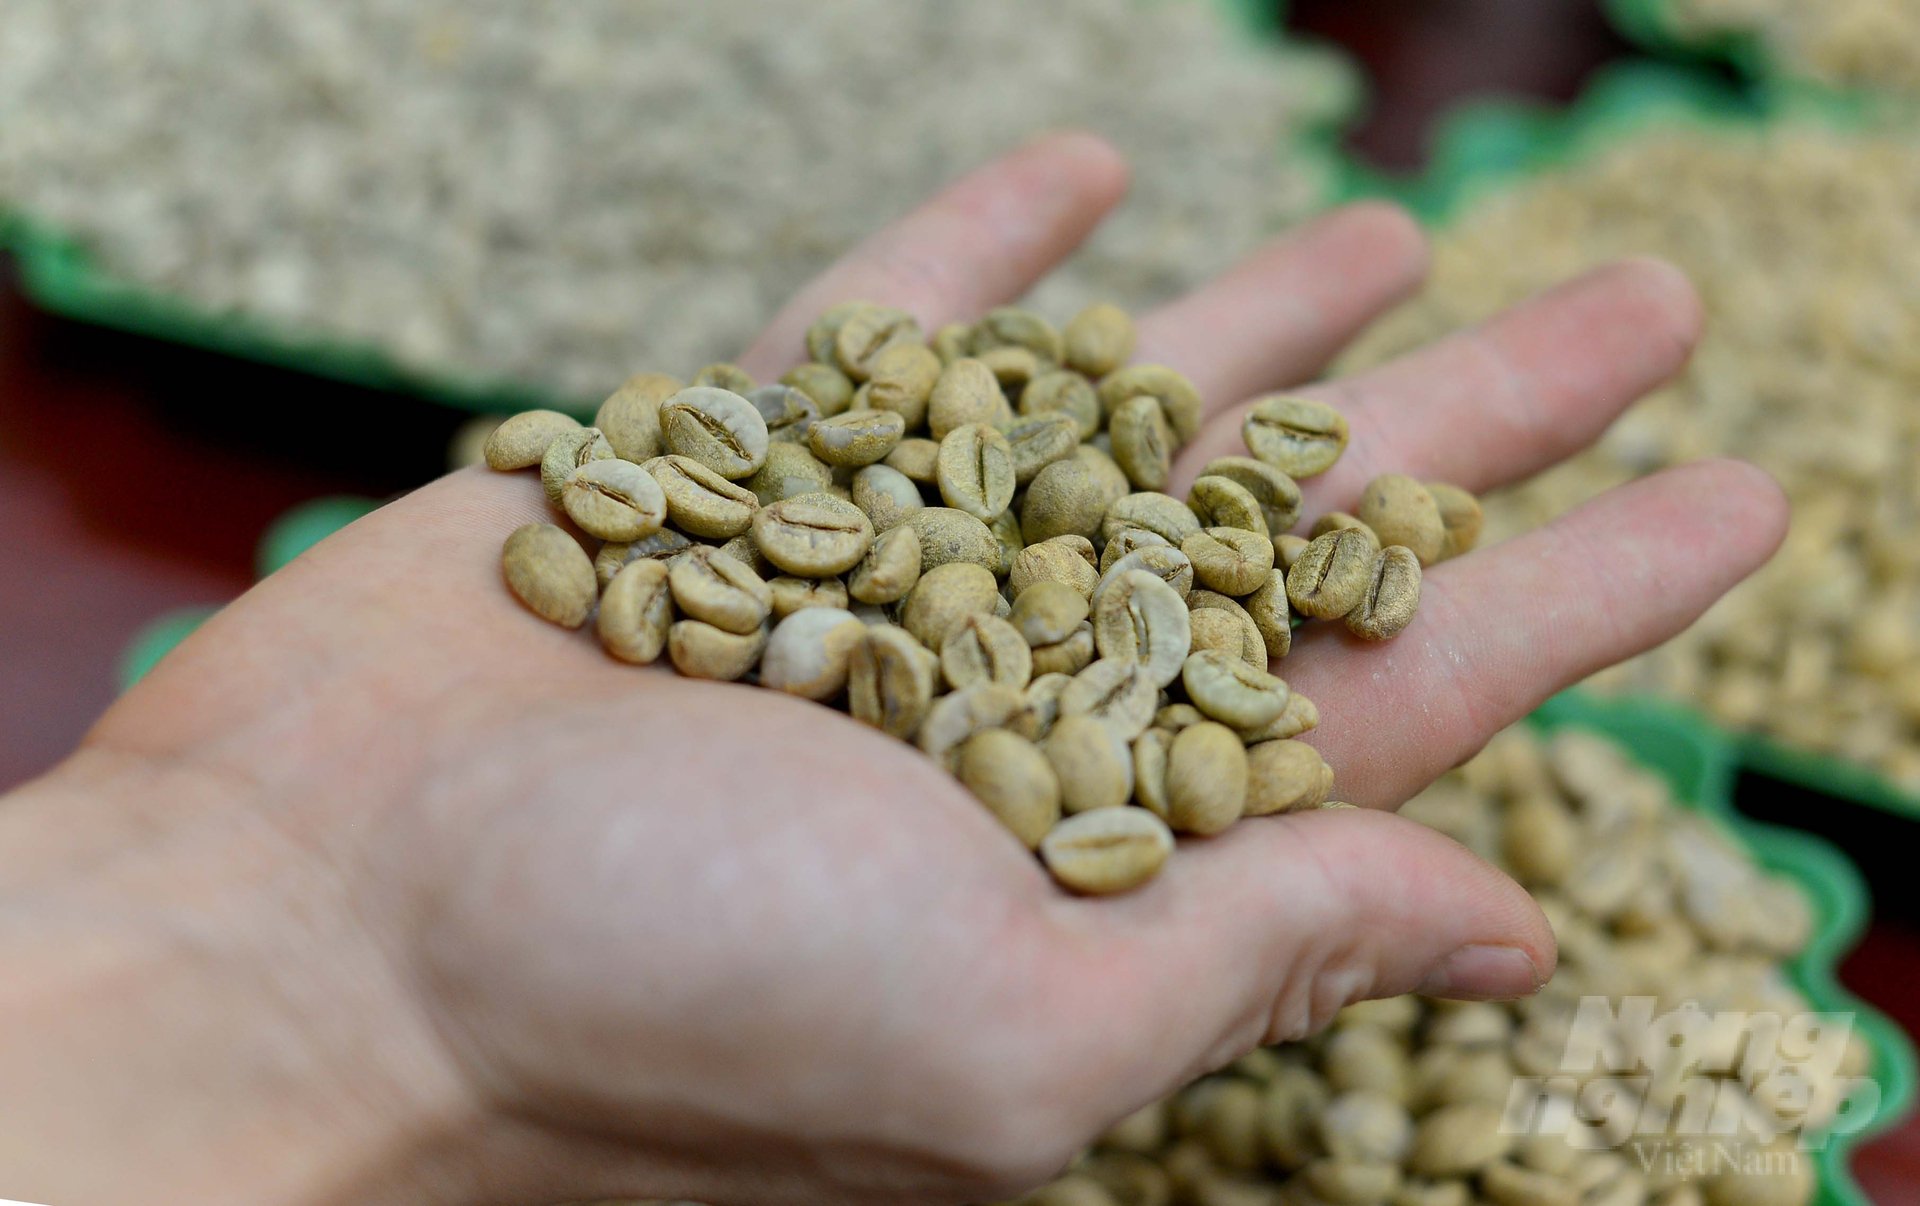 Cà phê là một trong những cây trồng chủ lực của tỉnh Lâm Đồng. Mỗi năm, địa phương này xuất khẩu khoảng 90 nghìn tấn với giá trị đạt trên 175 triệu USD. Ảnh: Minh Hậu.